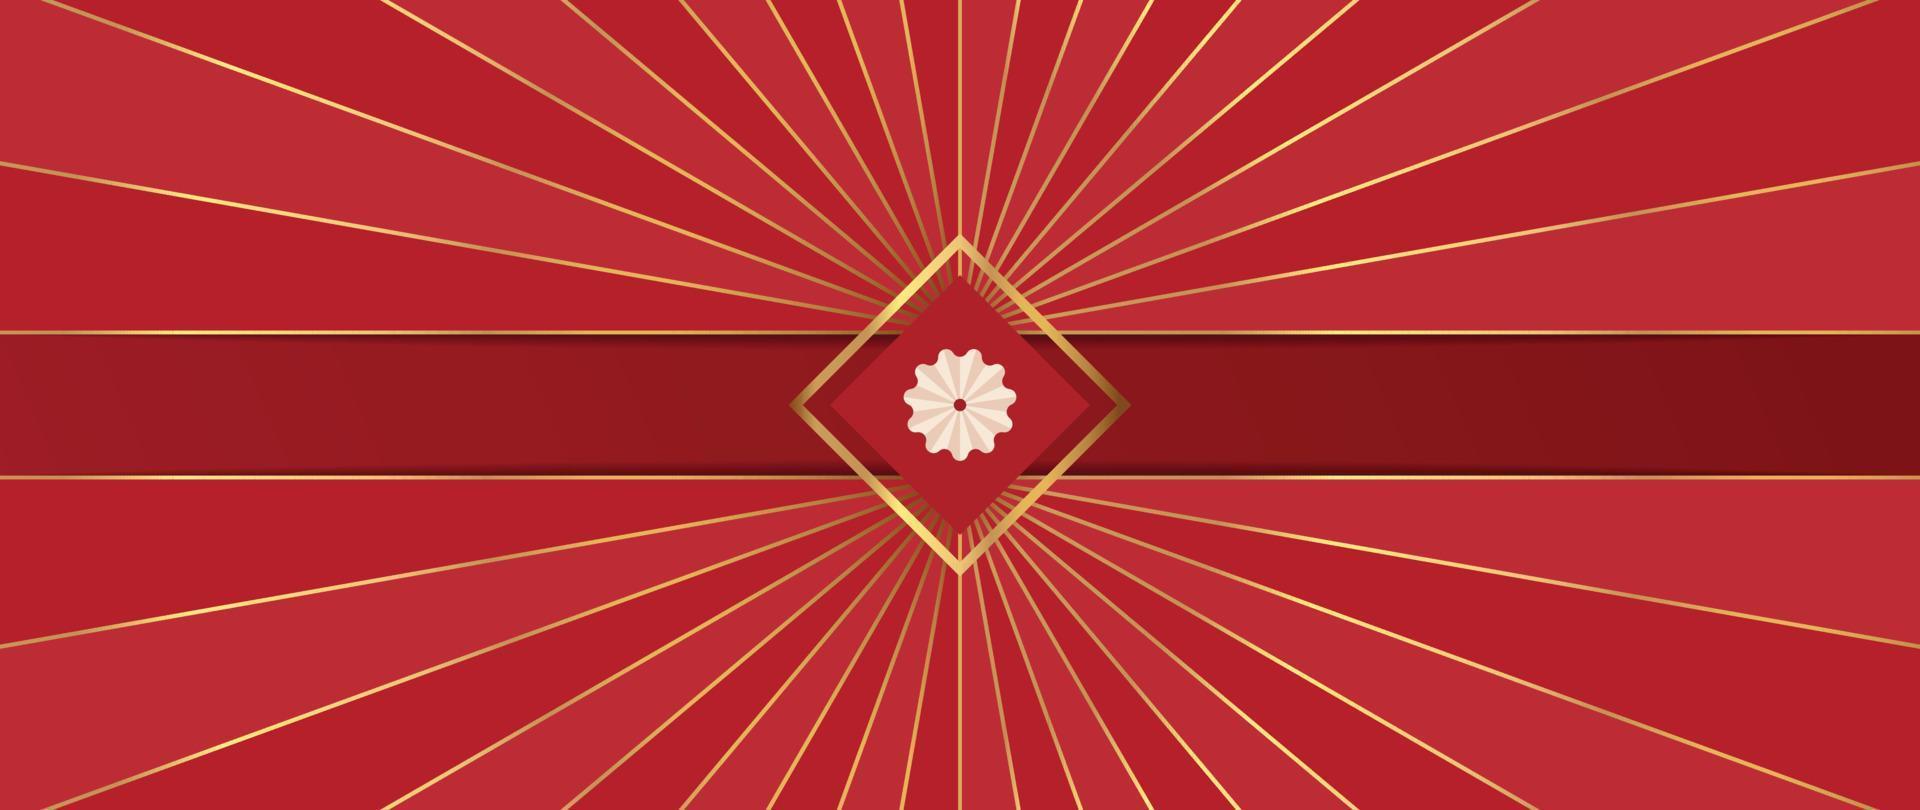 vetor de fundo de luxo chinês. estilo oriental decorativo elegante do símbolo da flor e forma geométrica com linha de raio de ouro gradiente sobre fundo vermelho. ilustração de design para papel de parede, cartão, pôster.